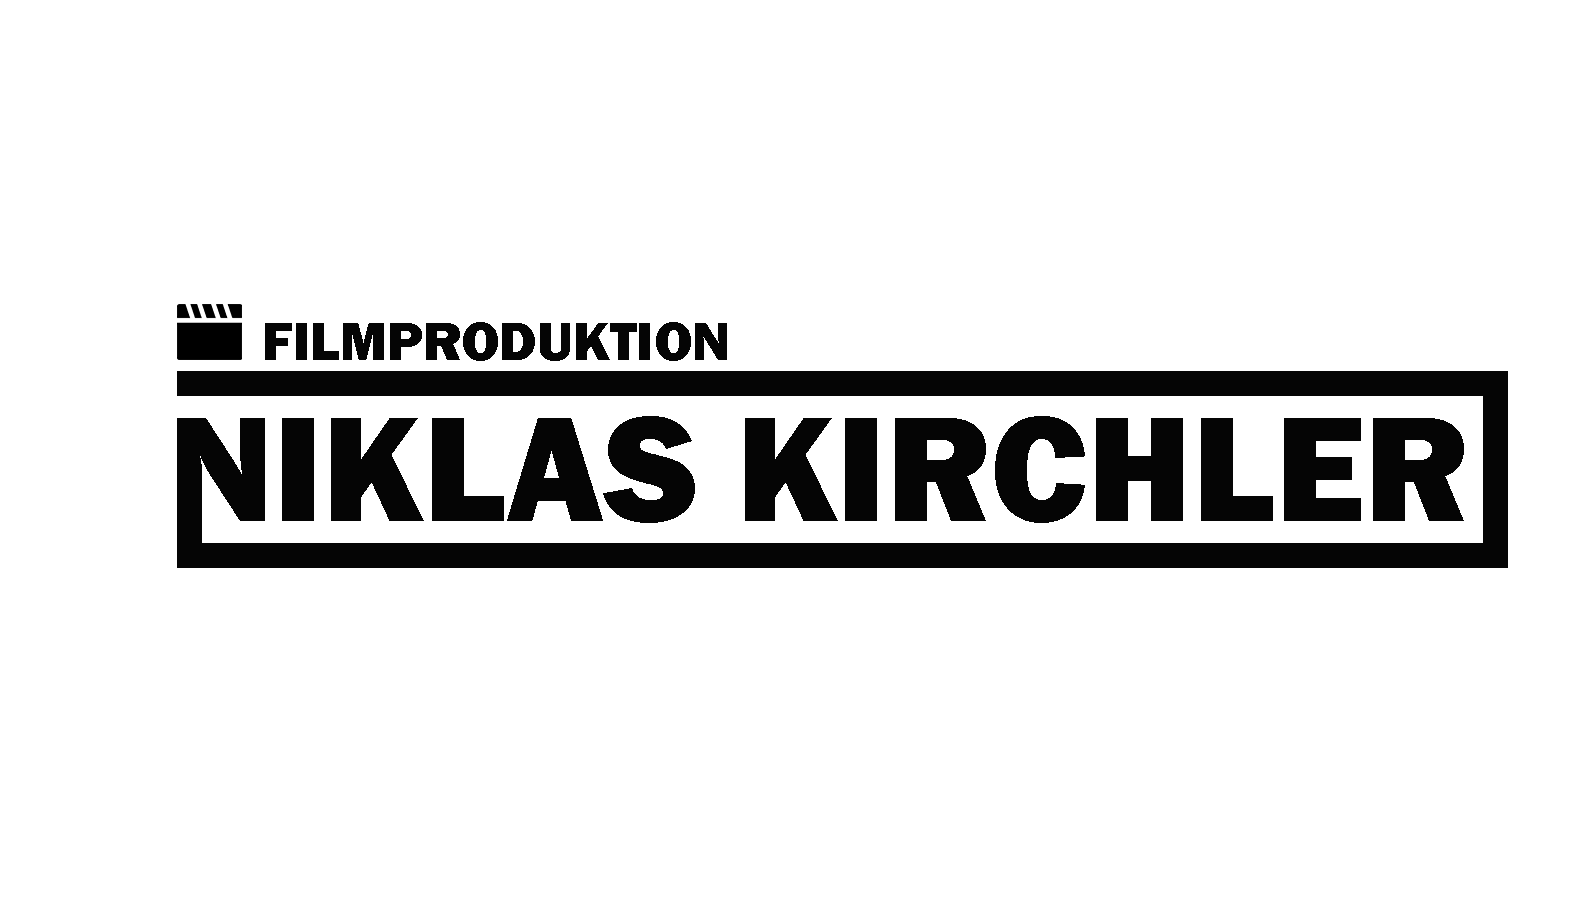 Filmproduktion Niklas Kichler